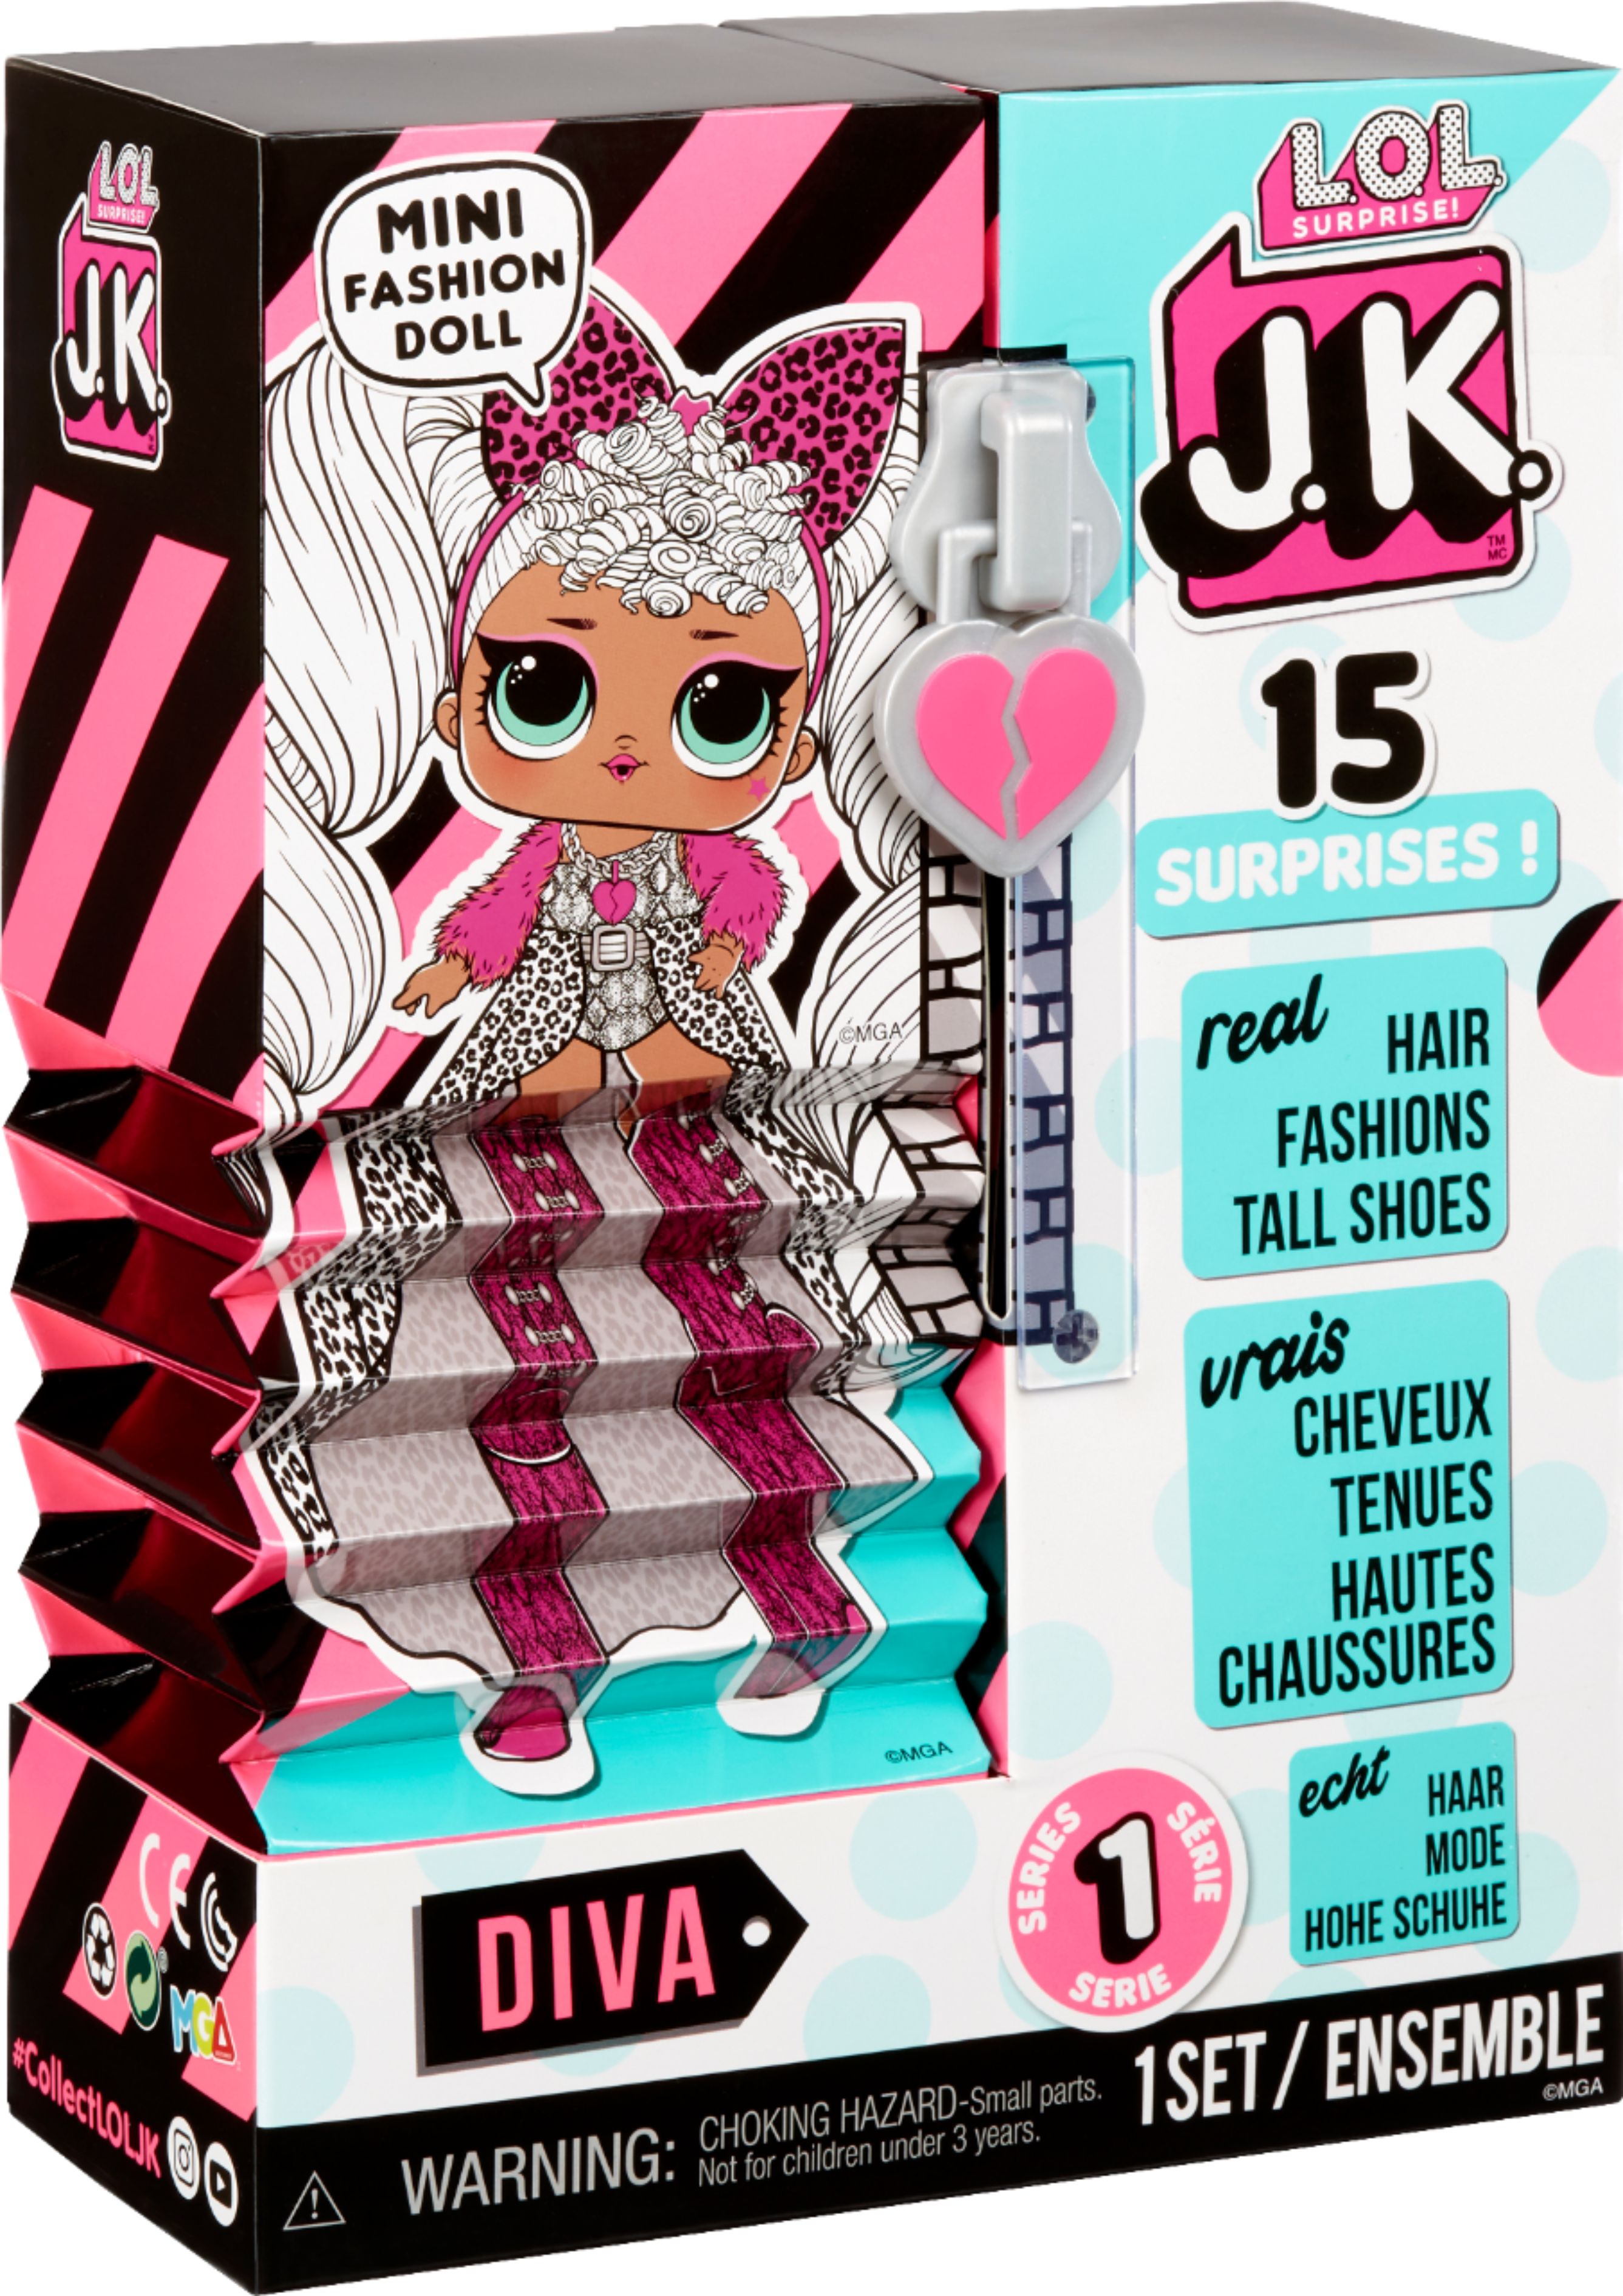 L.O.L. Surprise JK Diva Mini Fashion Doll with 15 Surprises